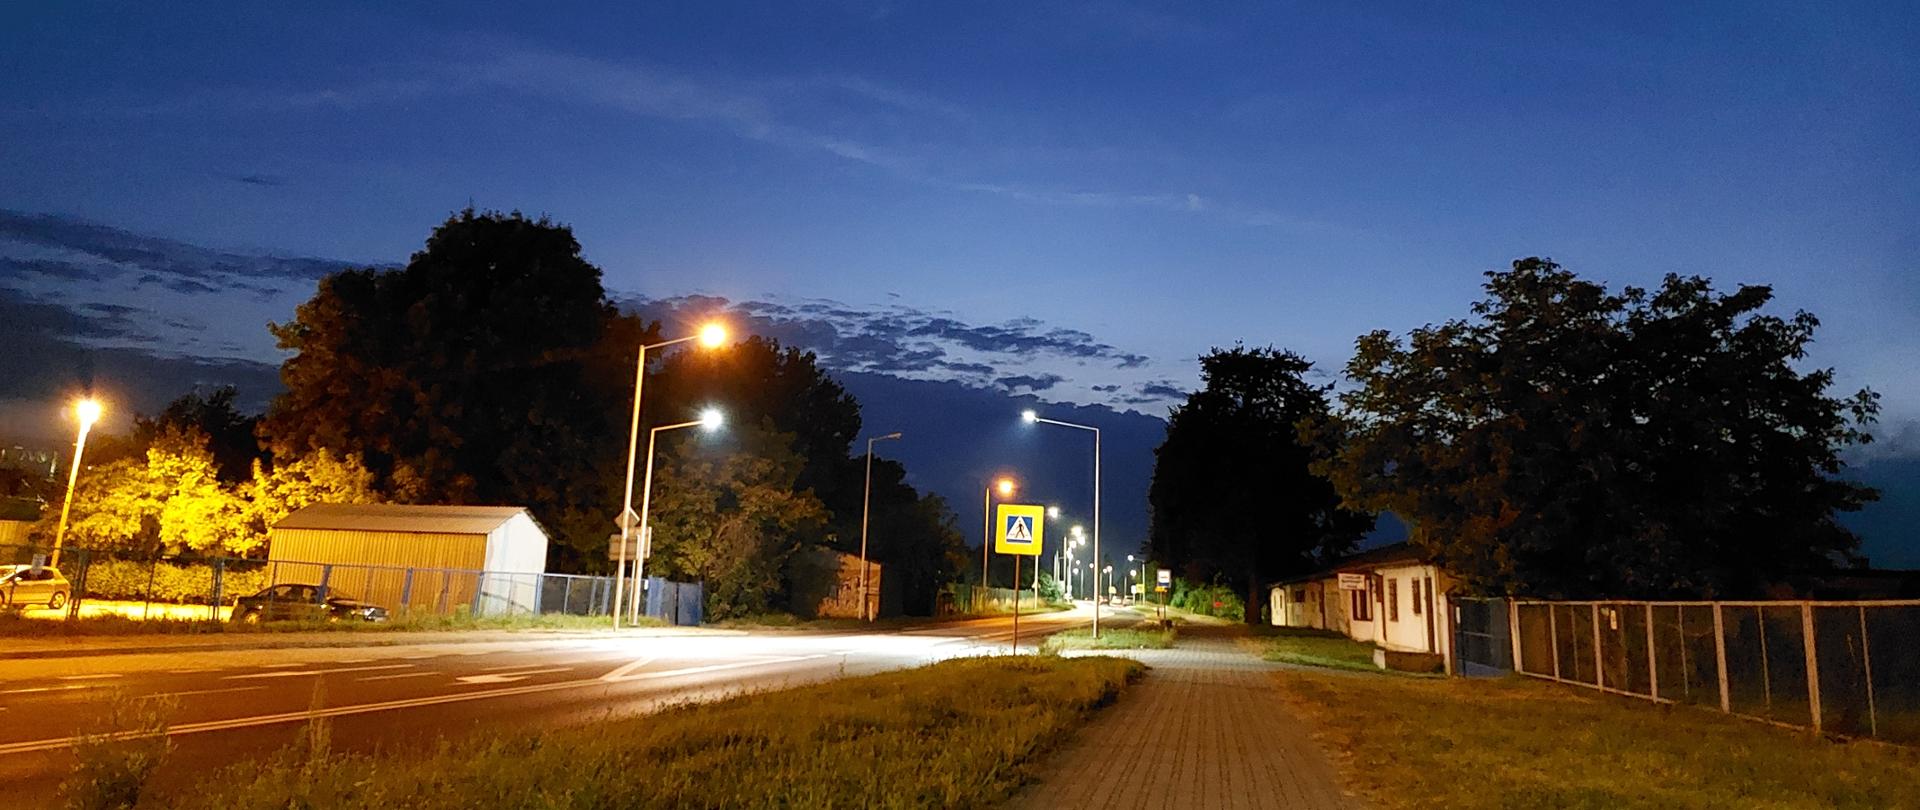 Przejście dla pieszych z nowym oświetleniem - droga w nocy wśród zabudowań, chodnik wzdłuż drogi, oznakowane i oświetlone przez latarnie przejście dla pieszych 